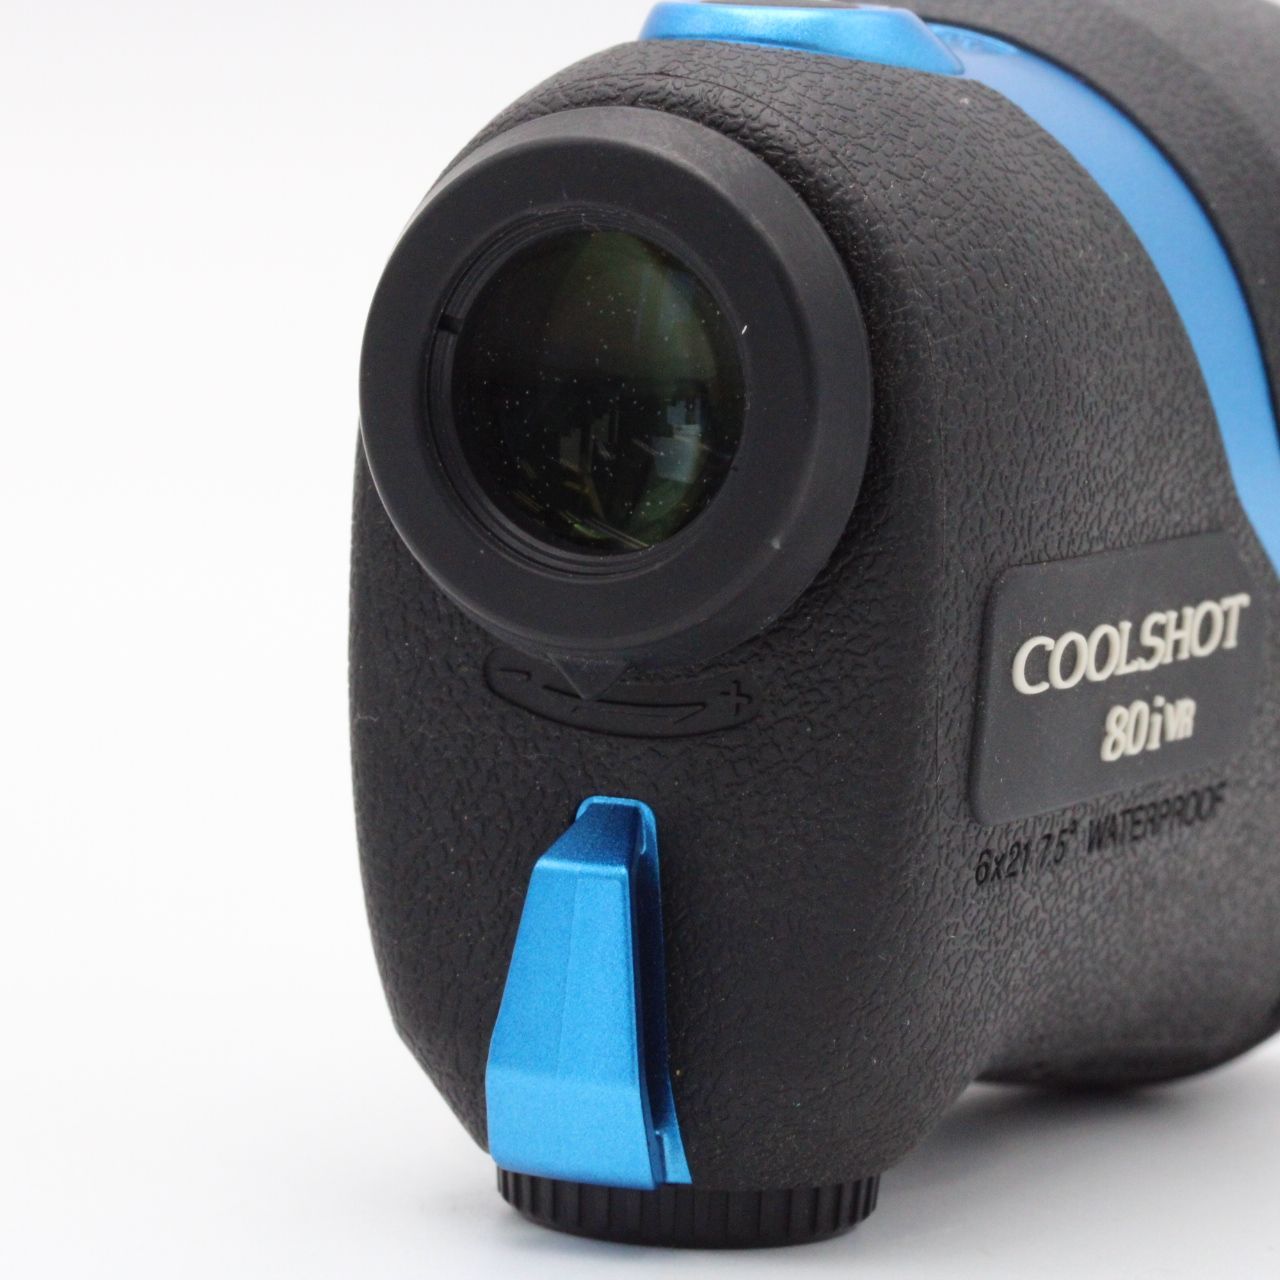 ニコン 【極上品】 Nikon COOLSHOT 80i VR LCS80IVR ゴルフ用レーザー距離計 #3202